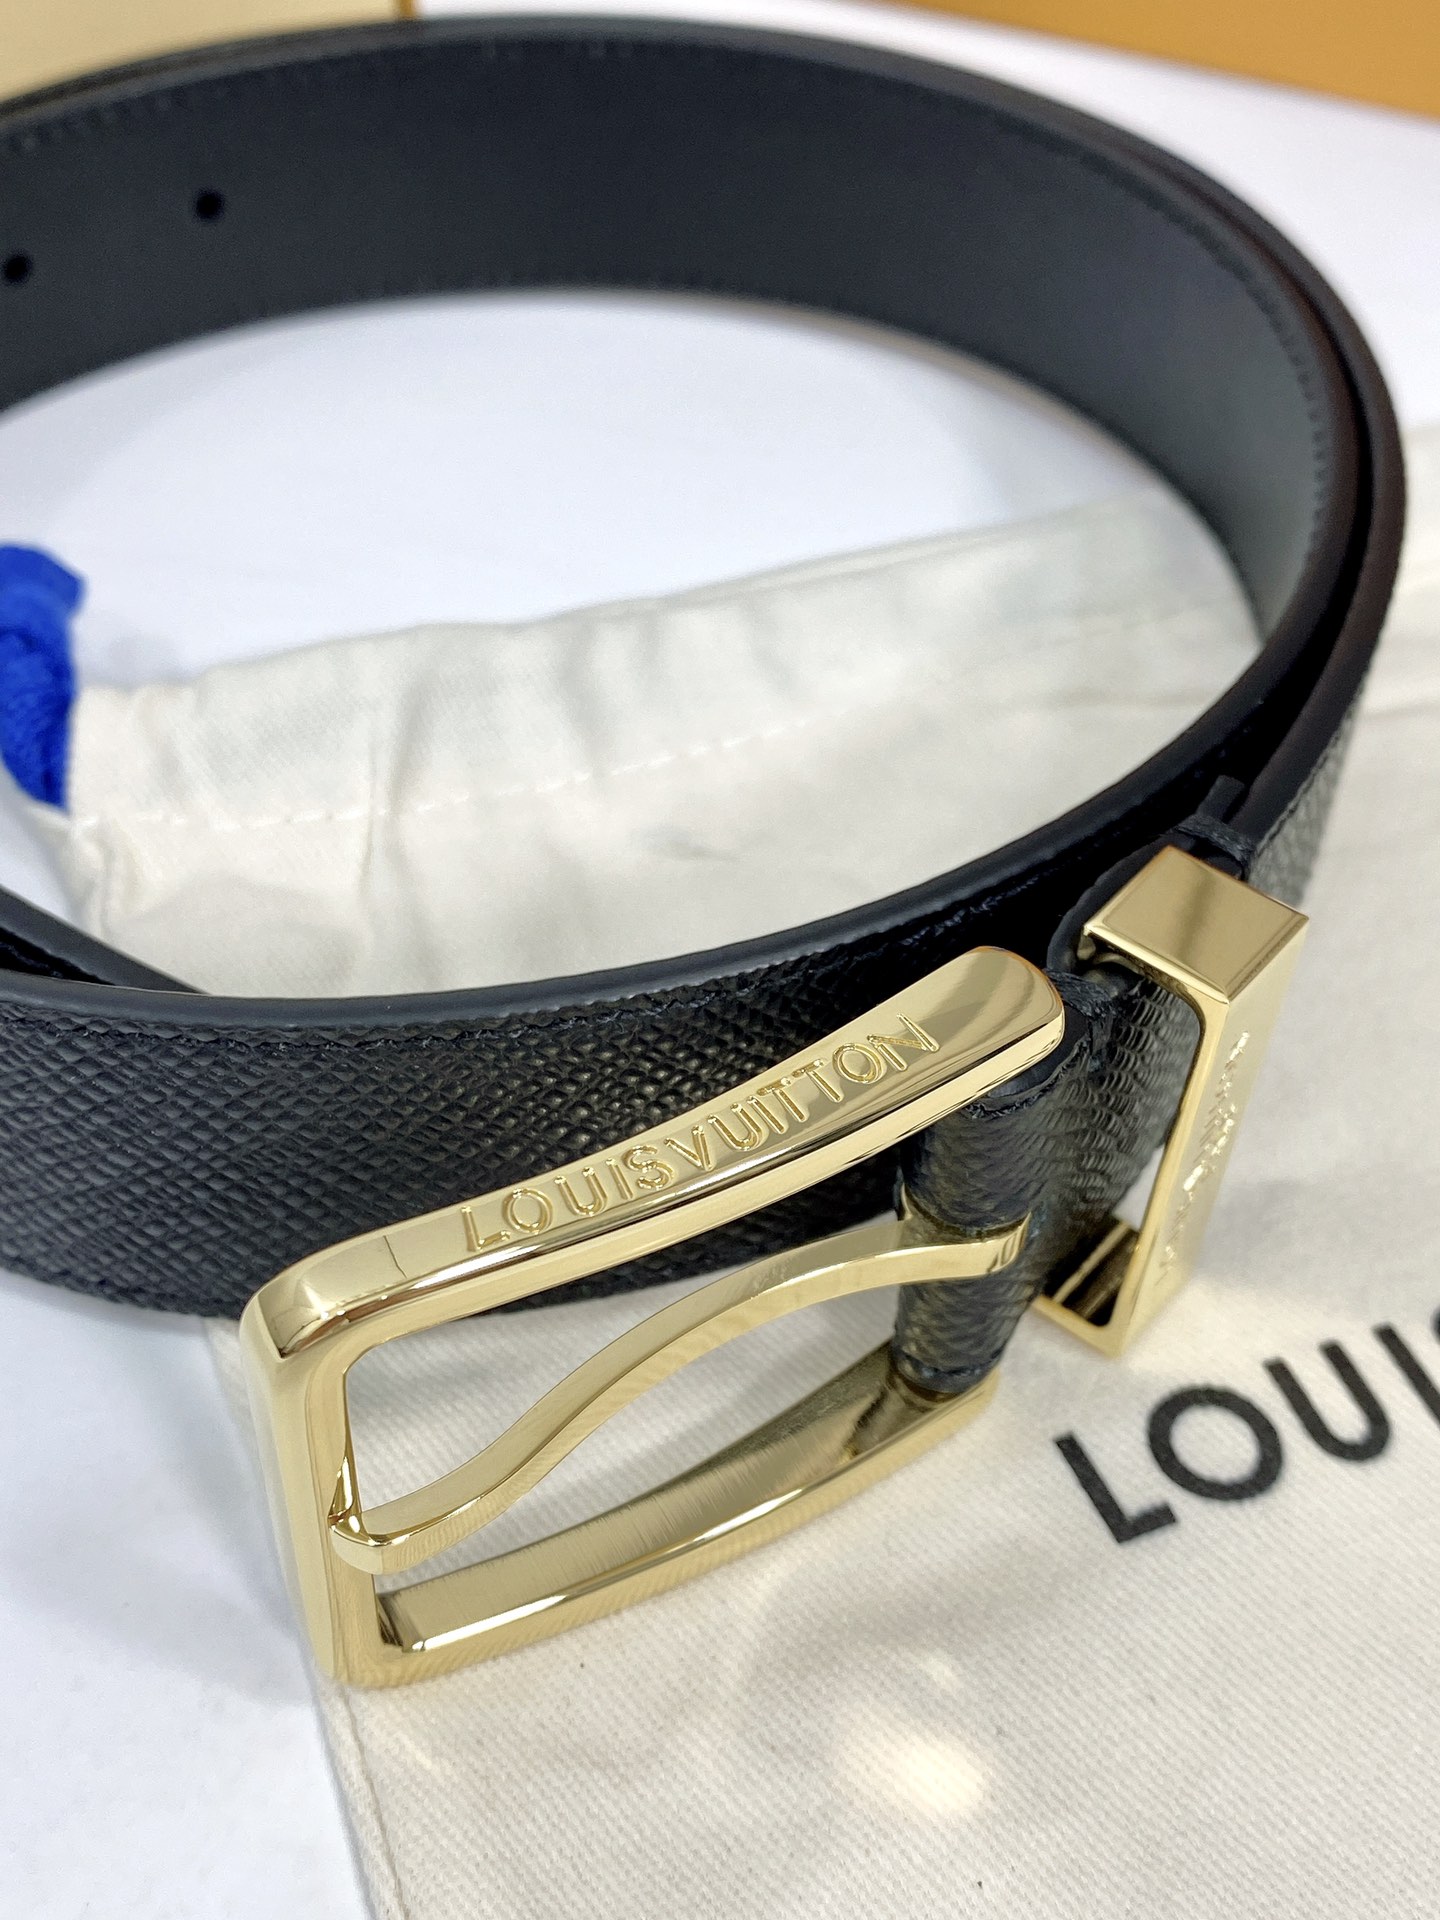 配全套包装礼盒LouisVuitton原单品质经典款腰带意大利进口原版头层牛皮精品纯铜针扣时尚百搭永不过